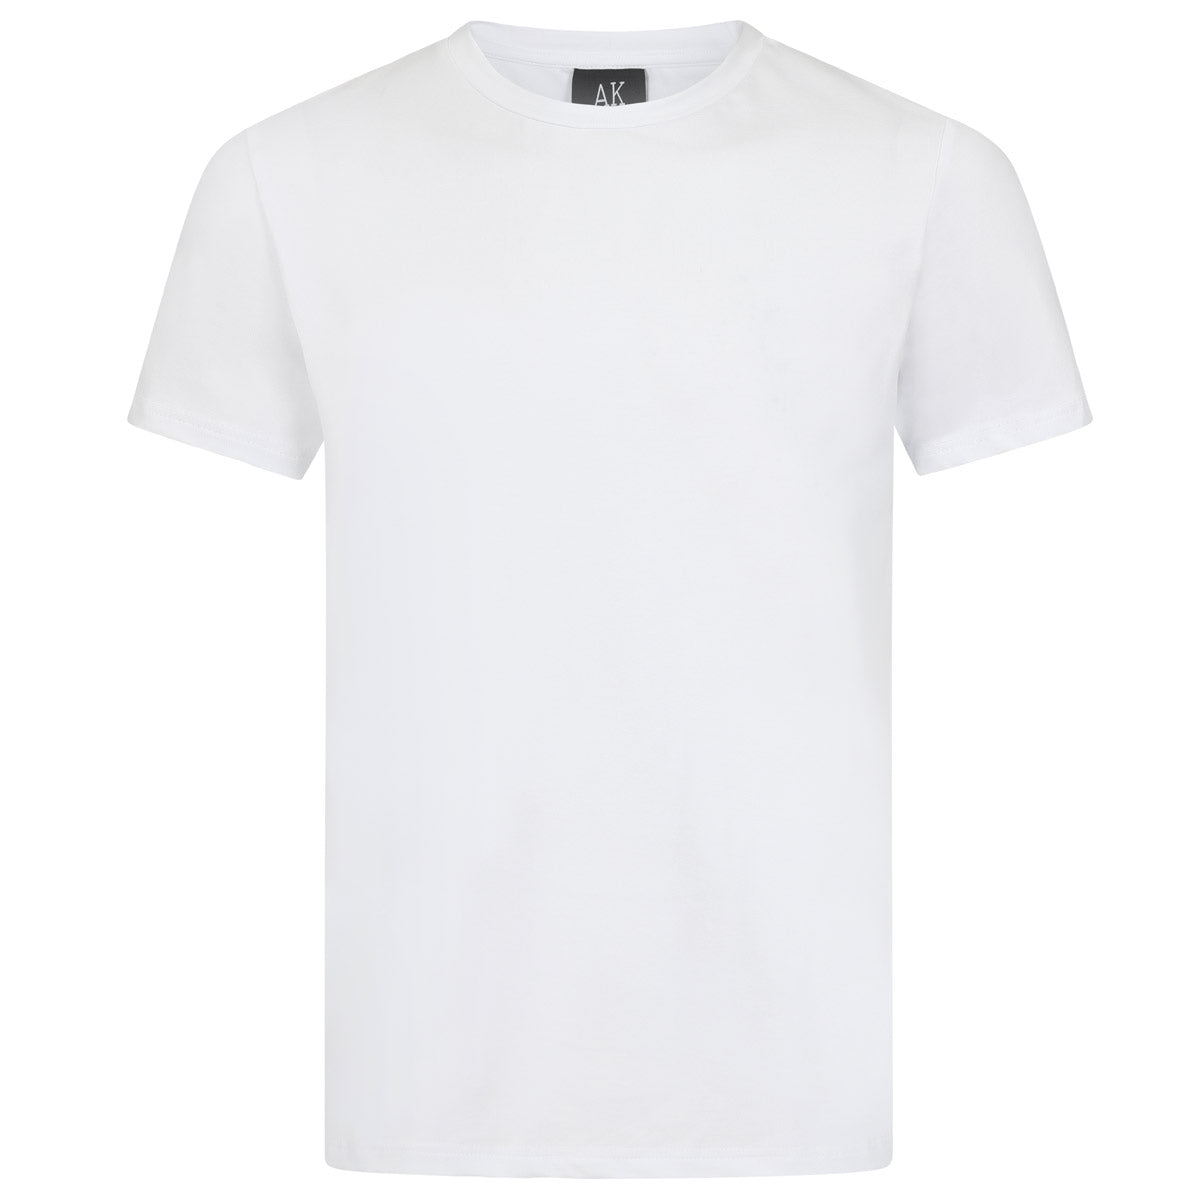 Essentials AK Crew Neck T-Shirt - White